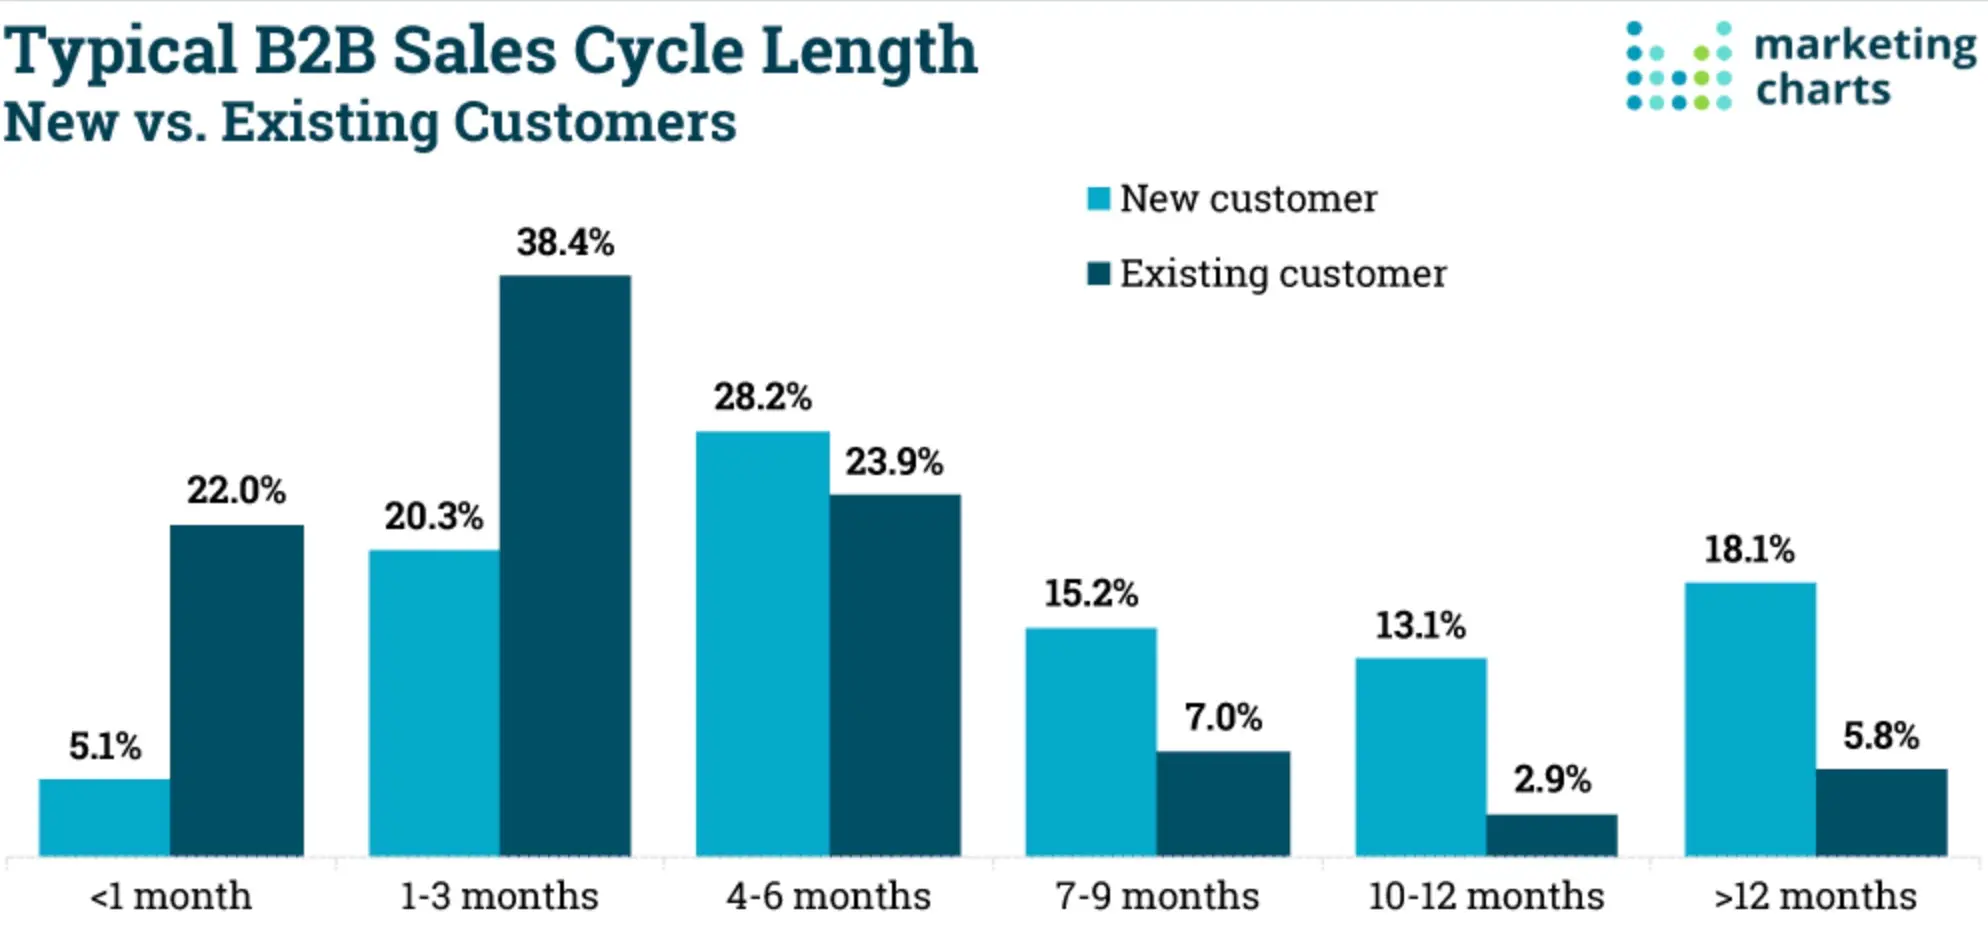 Duração do ciclo de vendas B2B